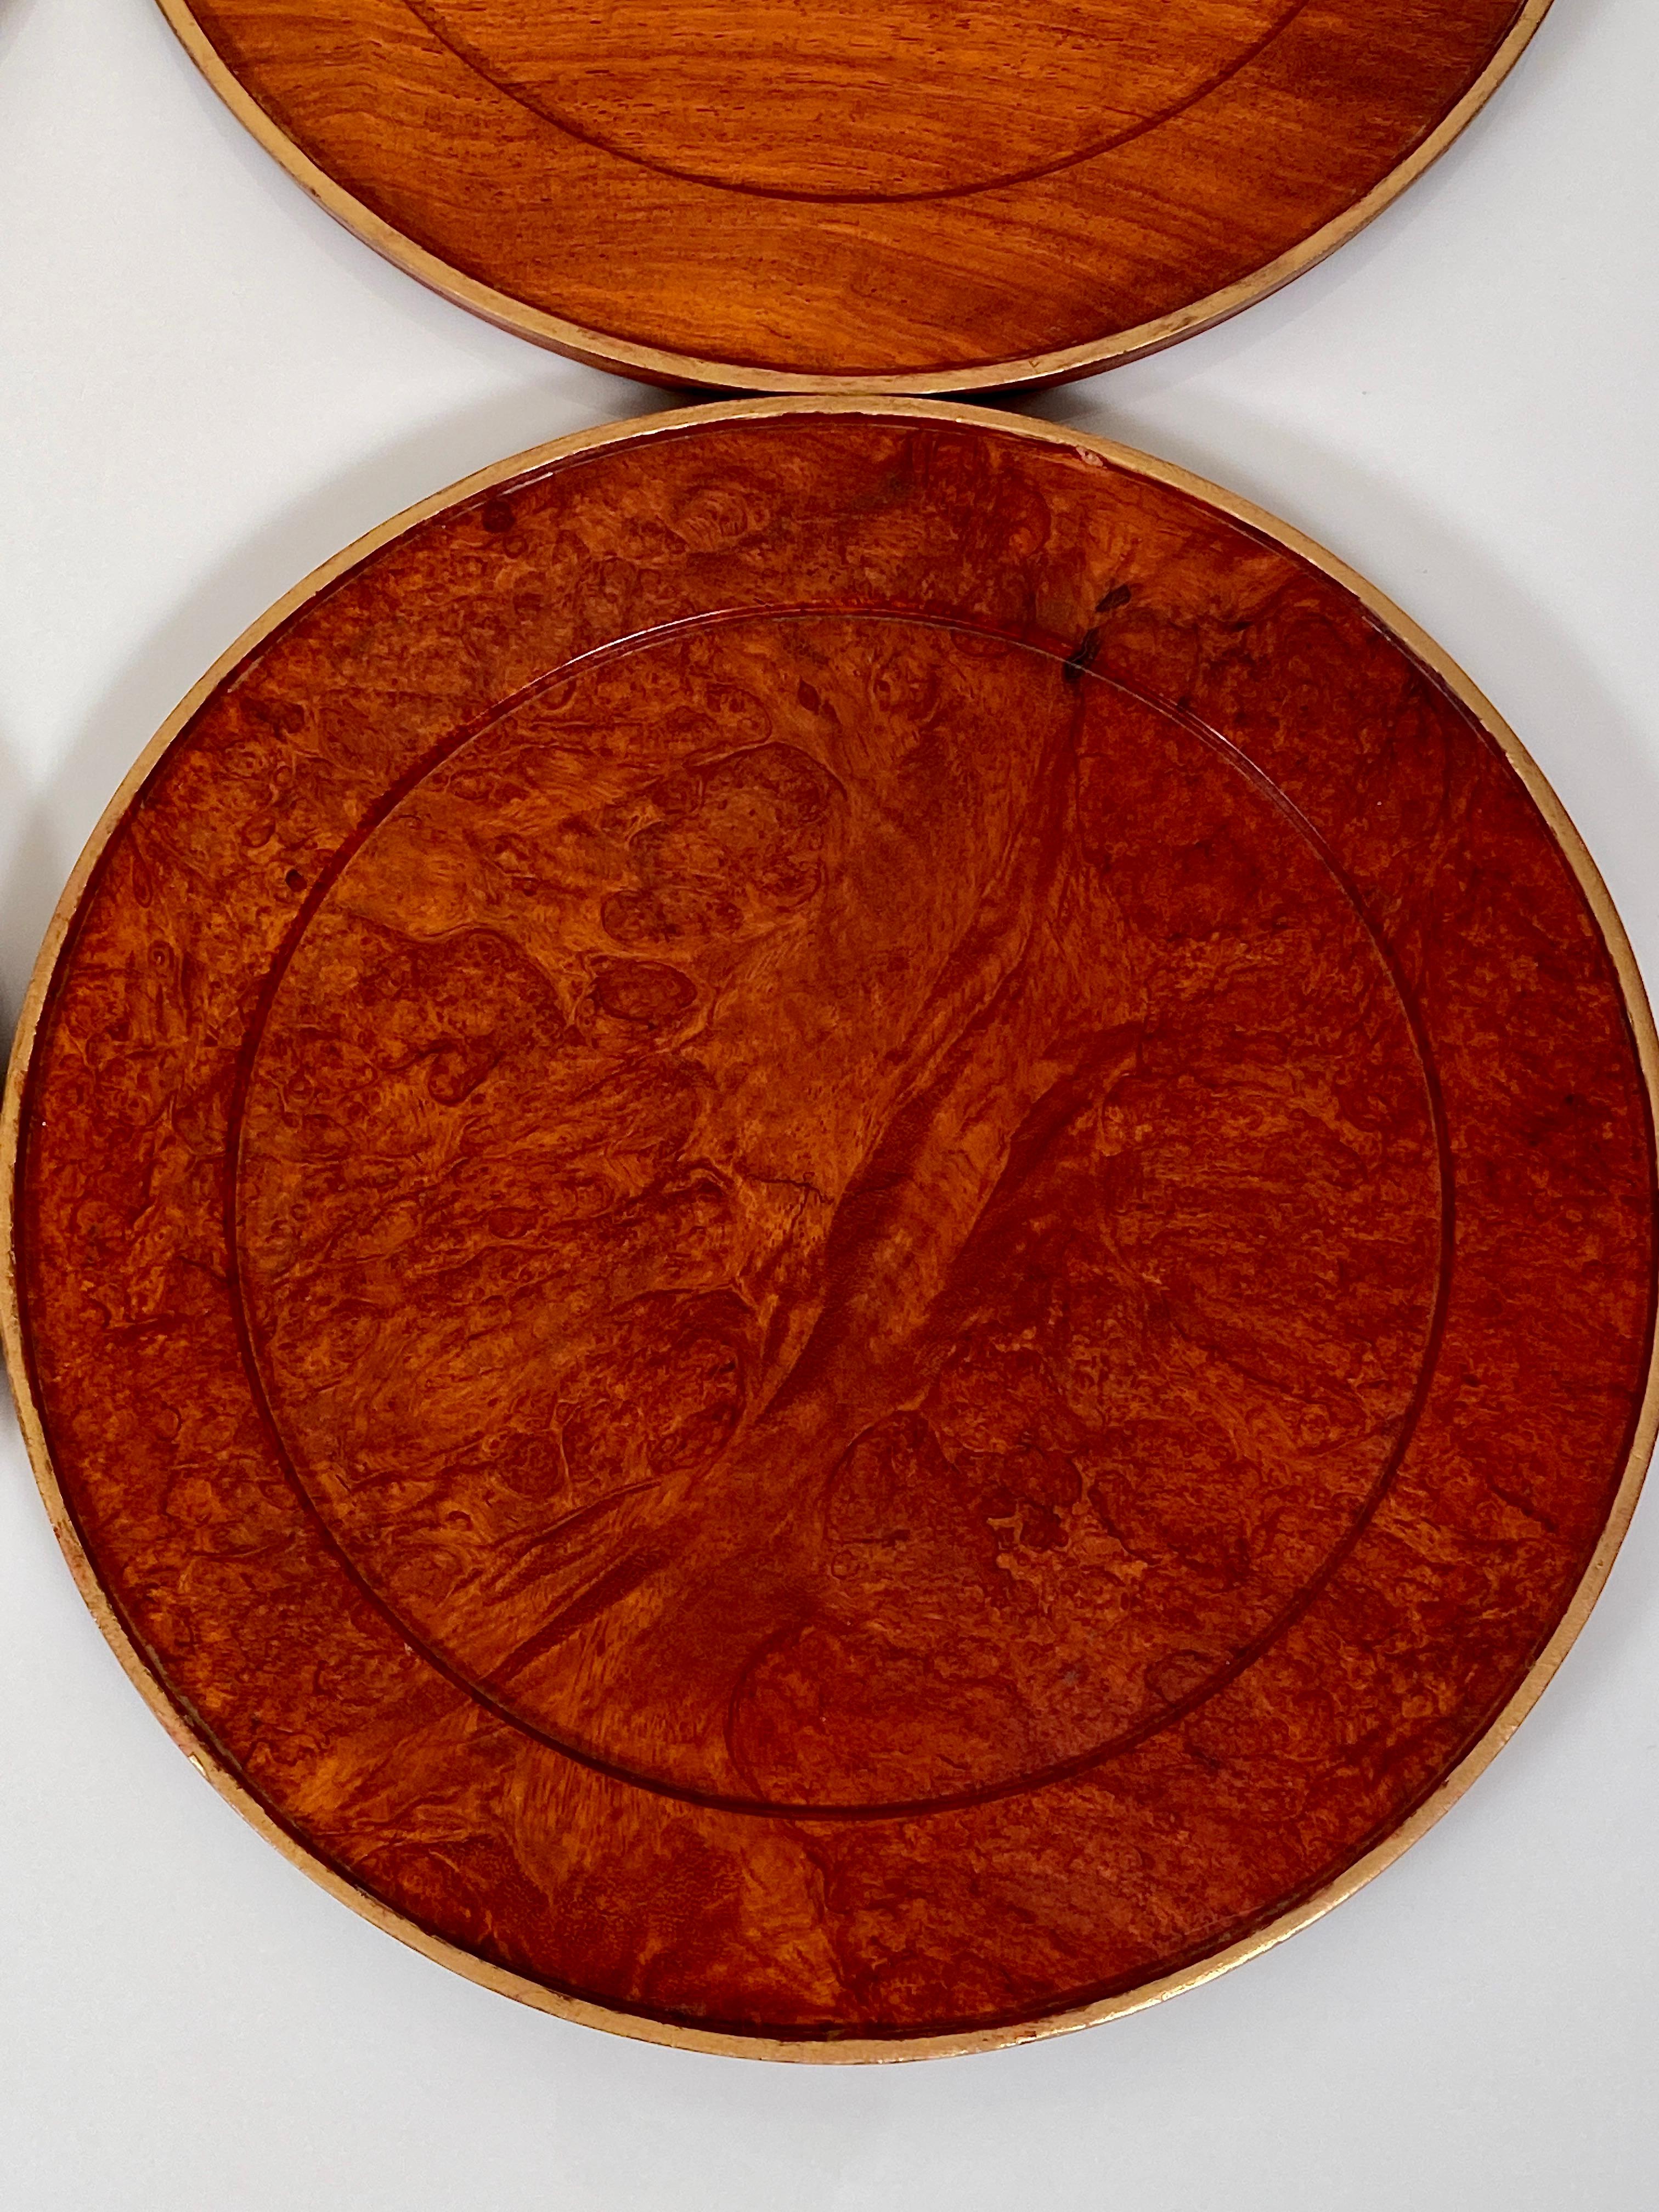 Charger Plates Burr Walnut PlaceMat Carved Wood Vintage Modernist 2